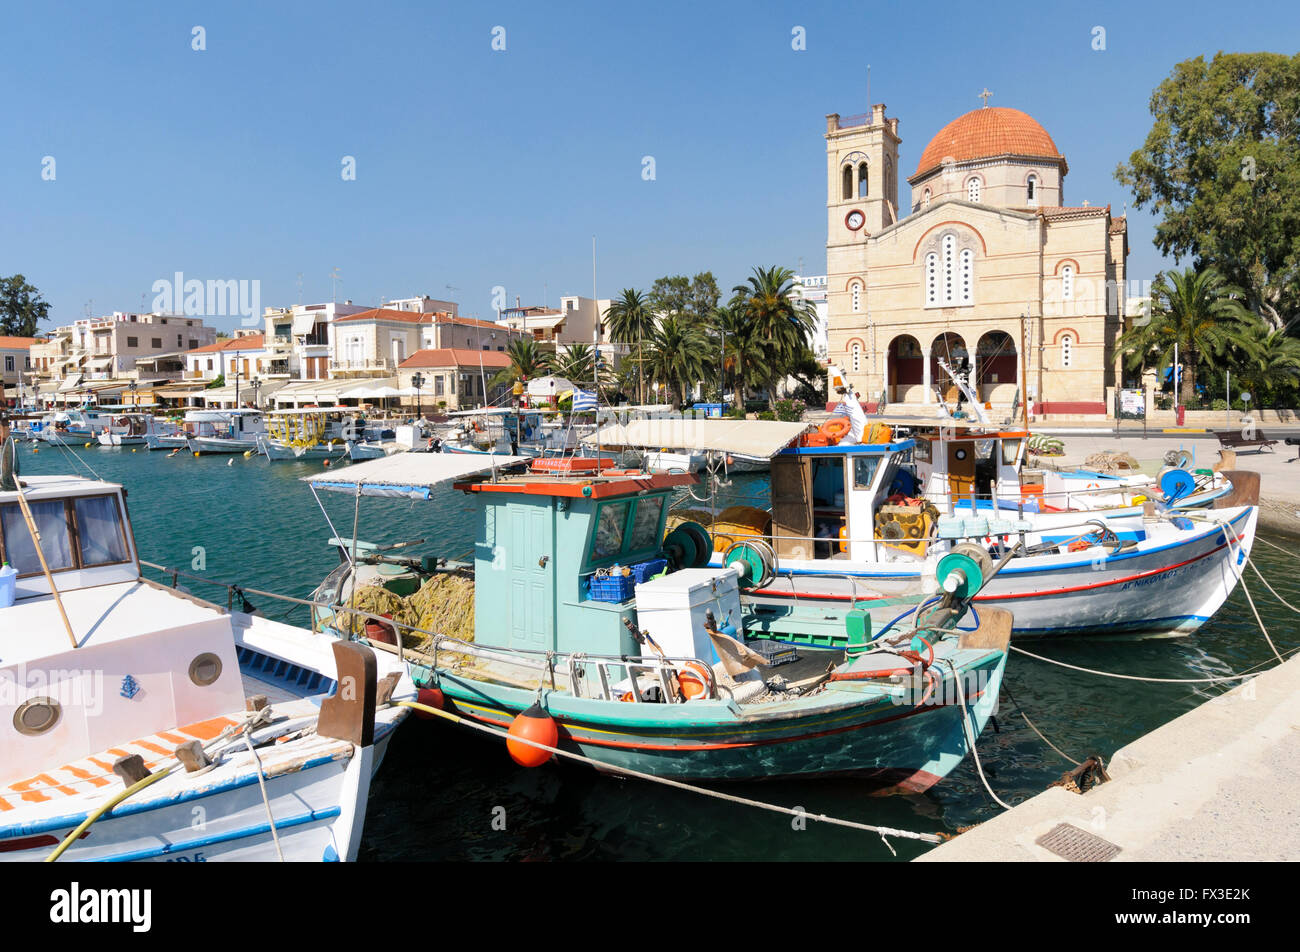 Le port et l'Église Panagitsa, Port d'Aegina, îles du golfe Saronique Egine, Grèce Banque D'Images